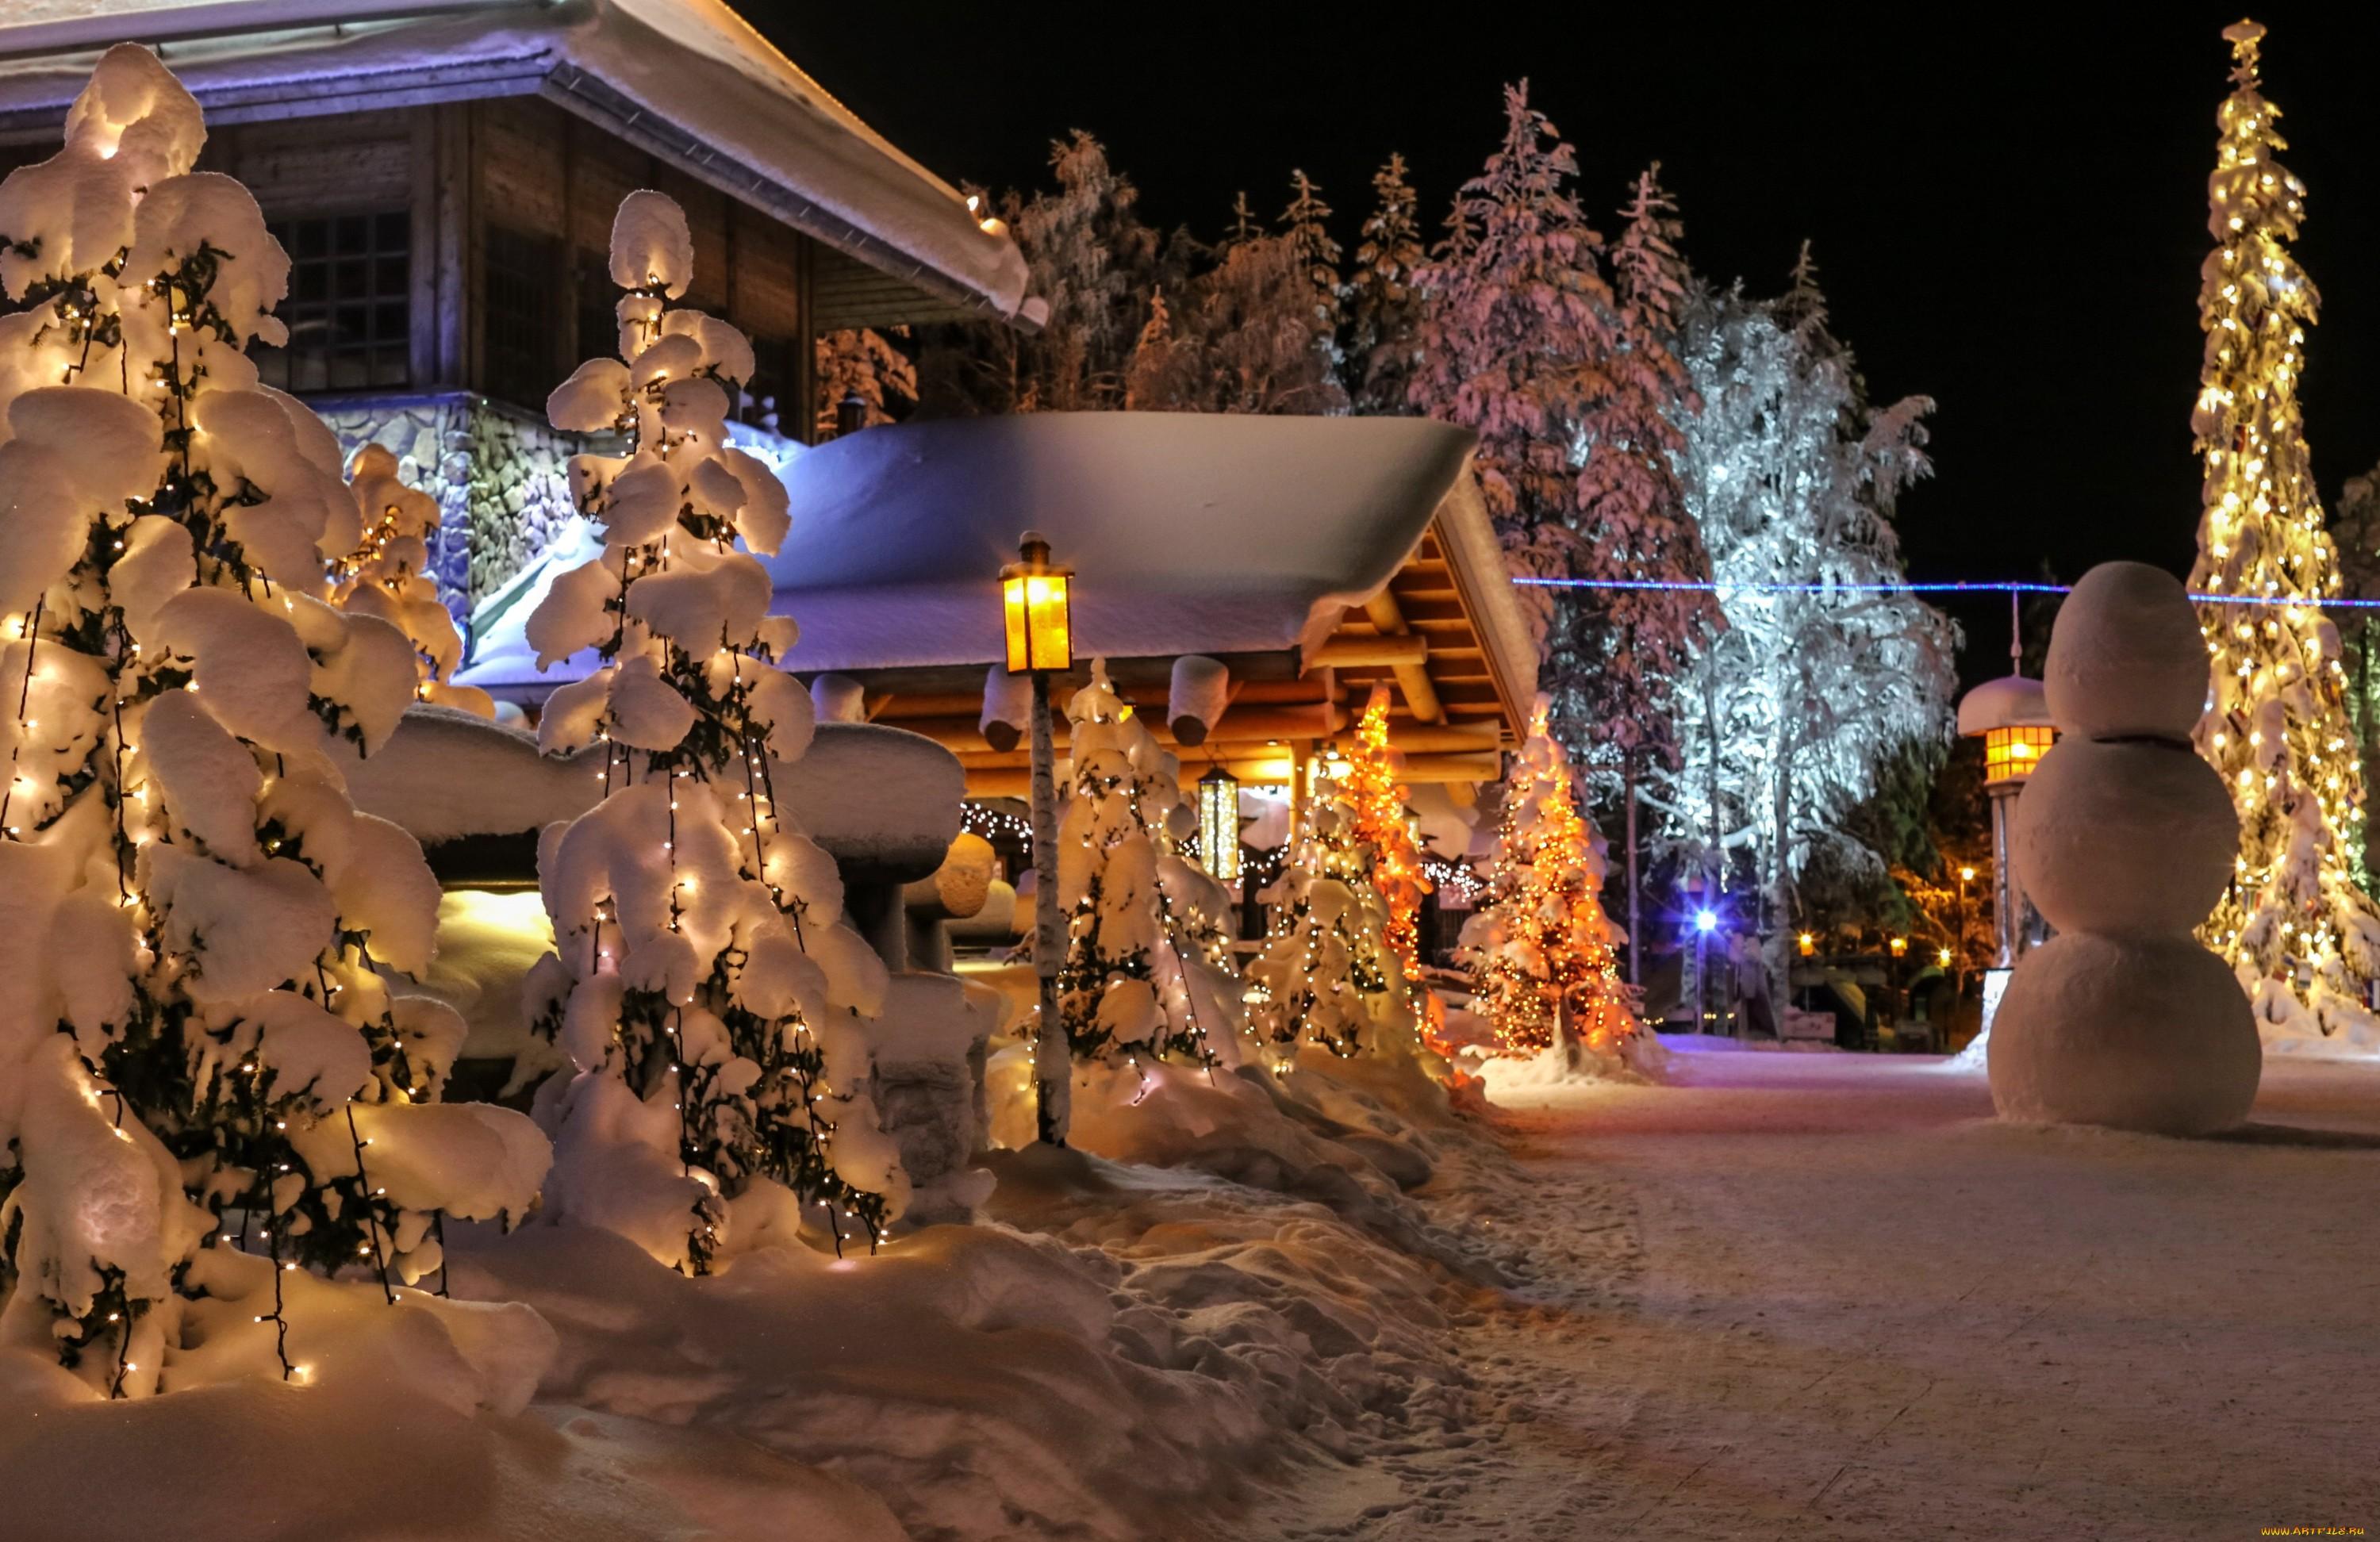 Обои дом, елка, снег, зима, новый год, мост, рождество, открытка картинки  на рабочий стол, фото скачать бесплатно